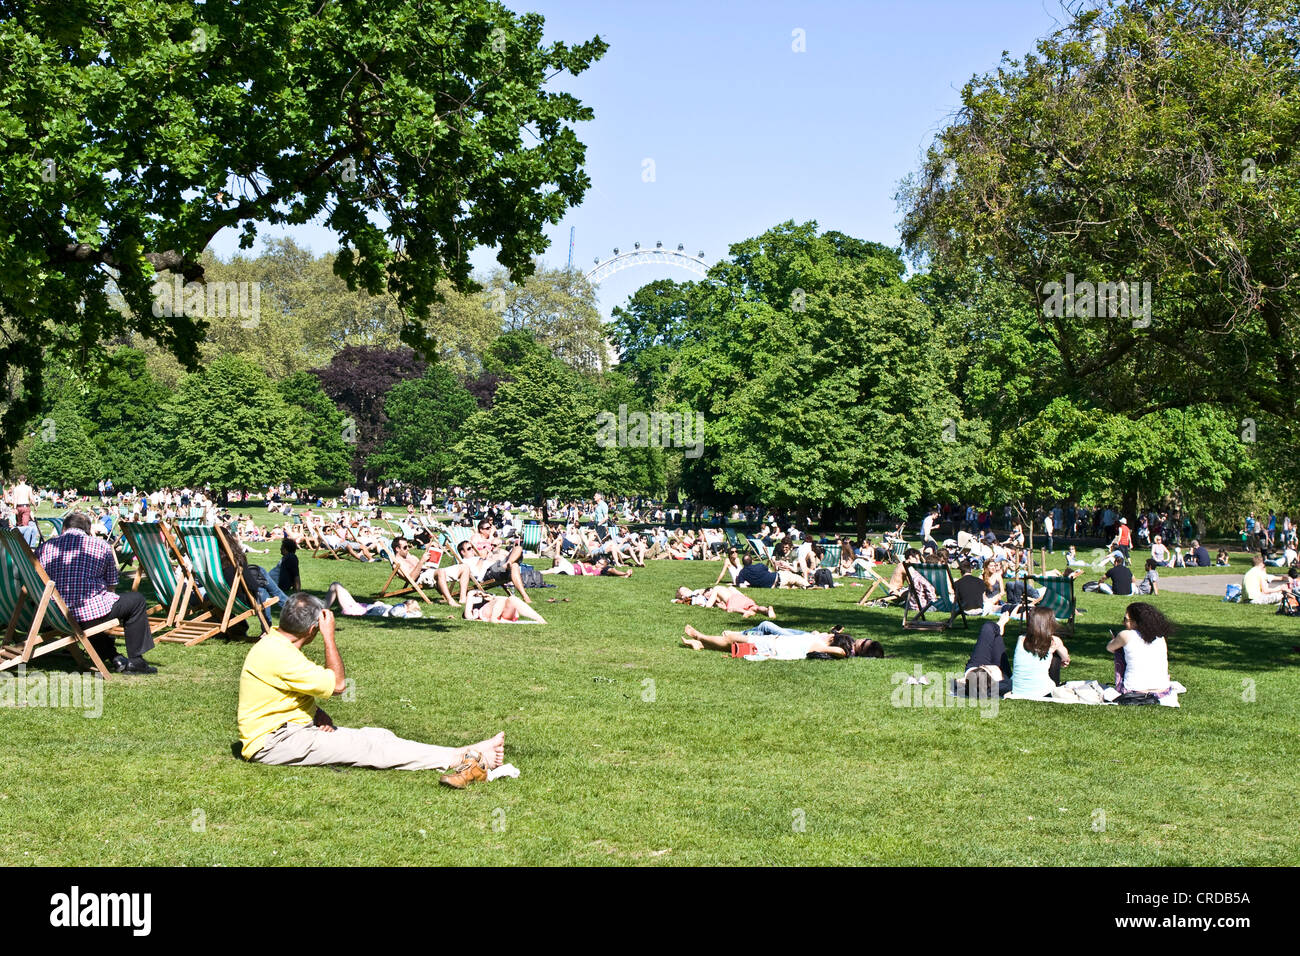 Foules bronzer et se détendre au soleil St James Park Londres Angleterre Europe Banque D'Images